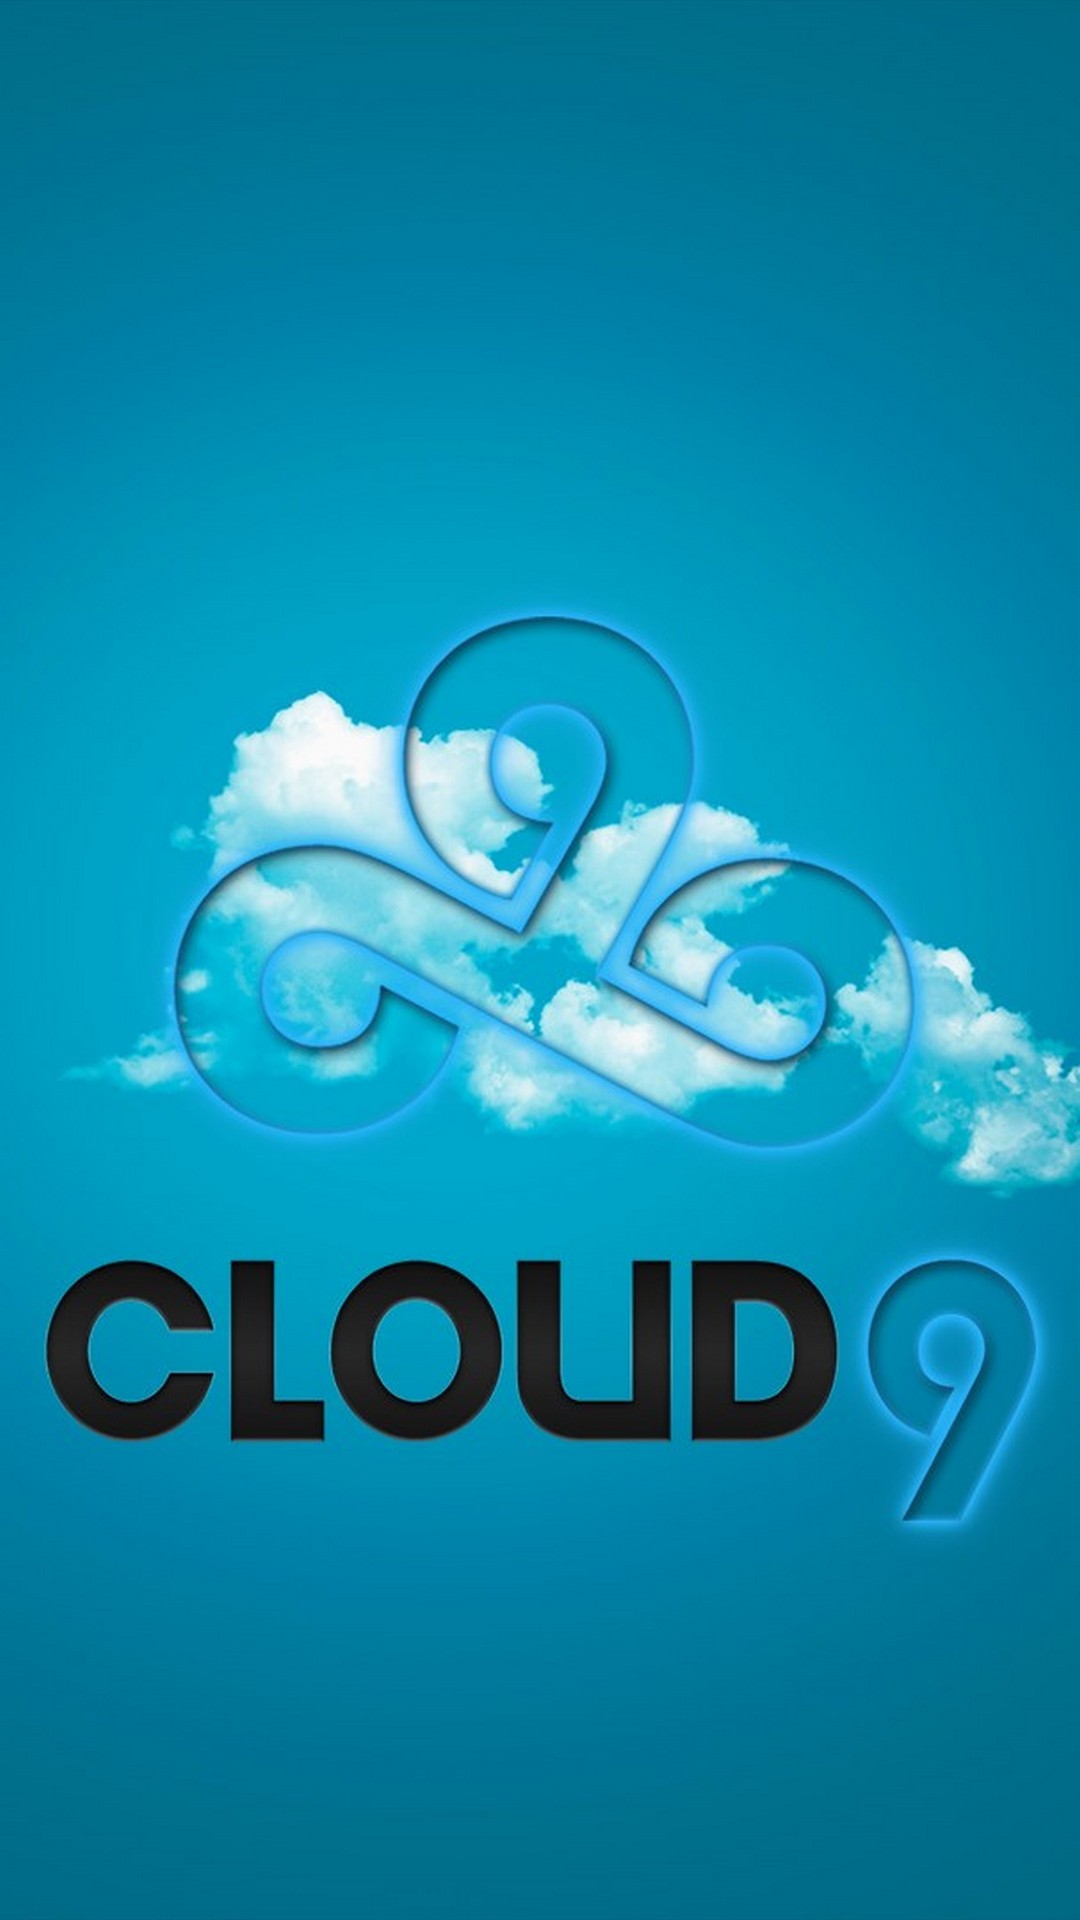 cloud 9 iphone wallpaper,aqua,text,blue,logo,font